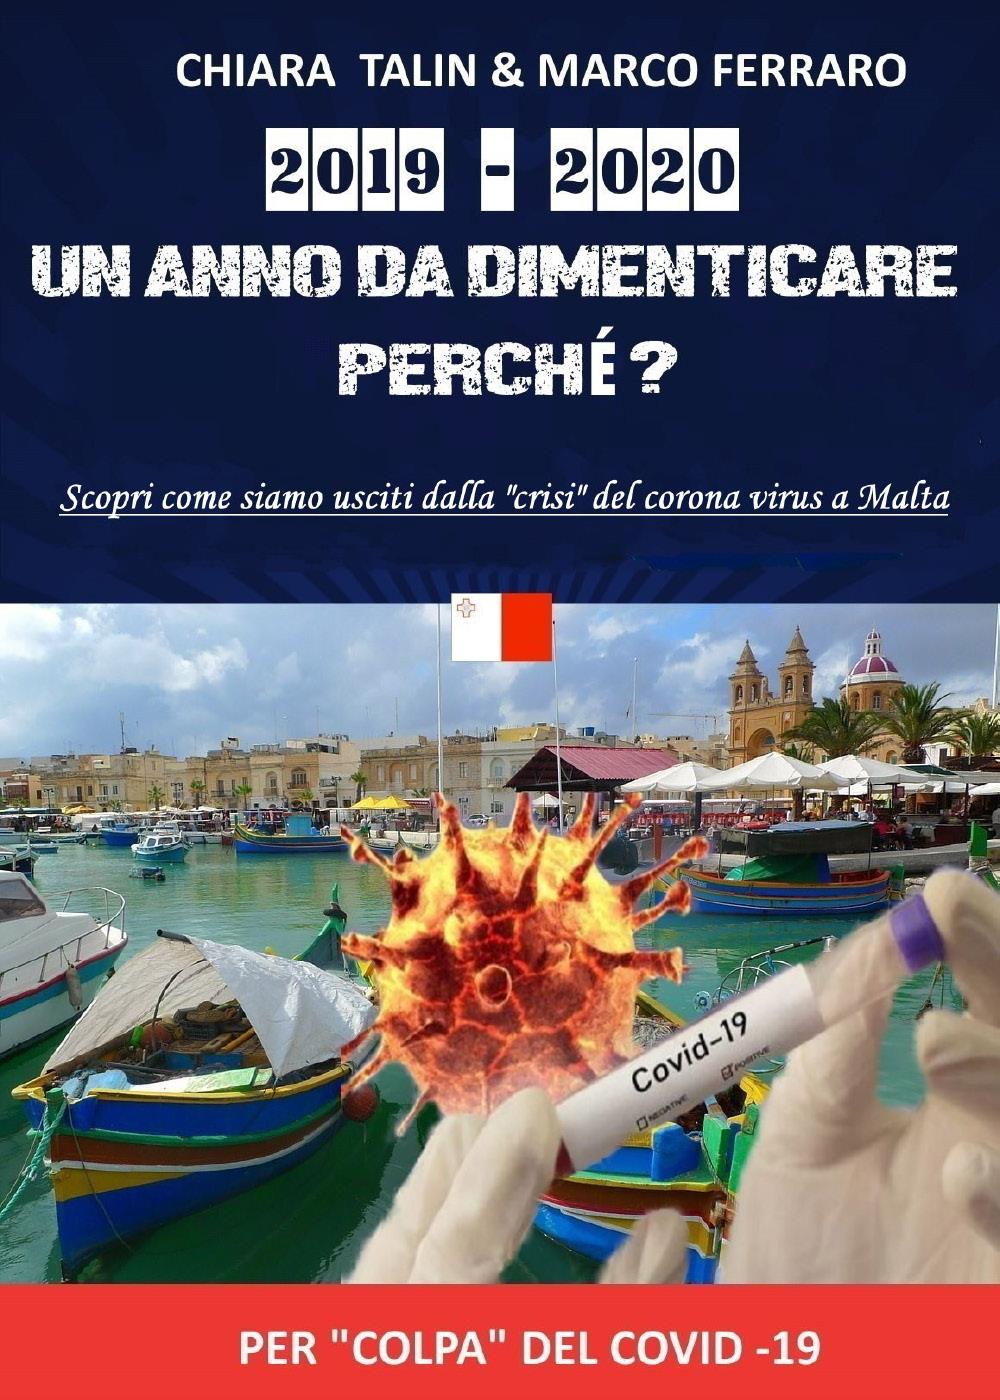 2019-2020 UN ANNO DA DIMENTICARE PERCHÉ? Scopri come siamo usciti dalla "crisi" del corona virus a Malta